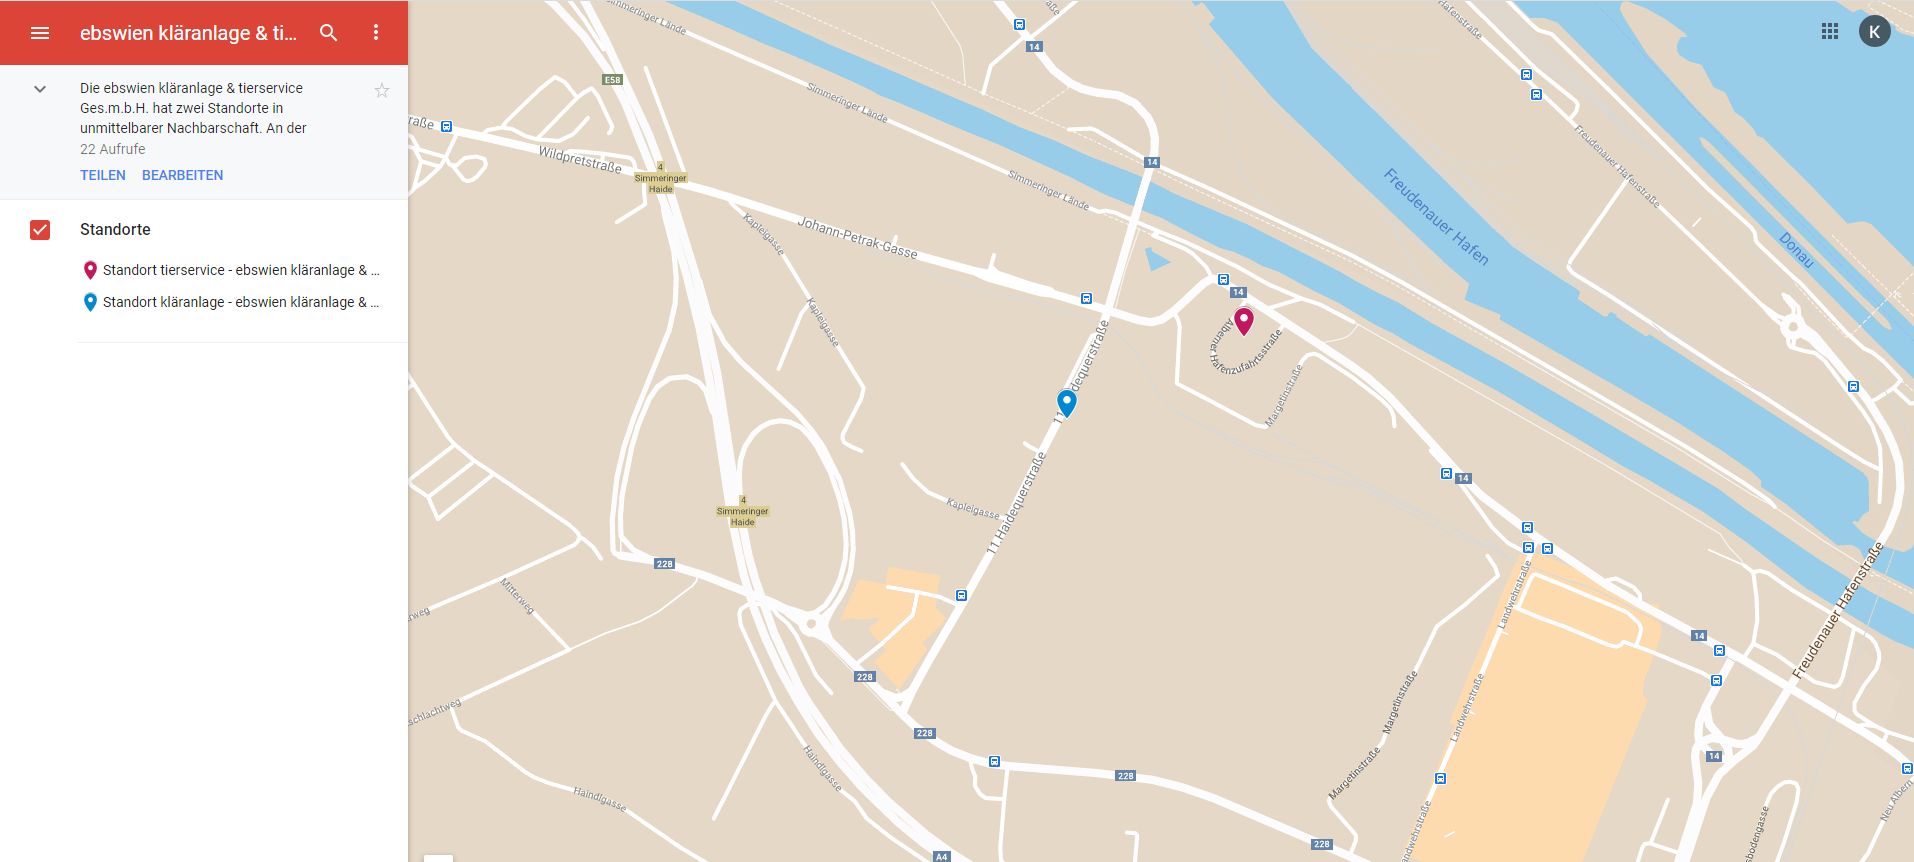 Bild der Google-Maps-Übersichtskarte zur optimalen Planung der Anreise zur ebswien. Das Bild ist auf Google-Maps verlinkt.